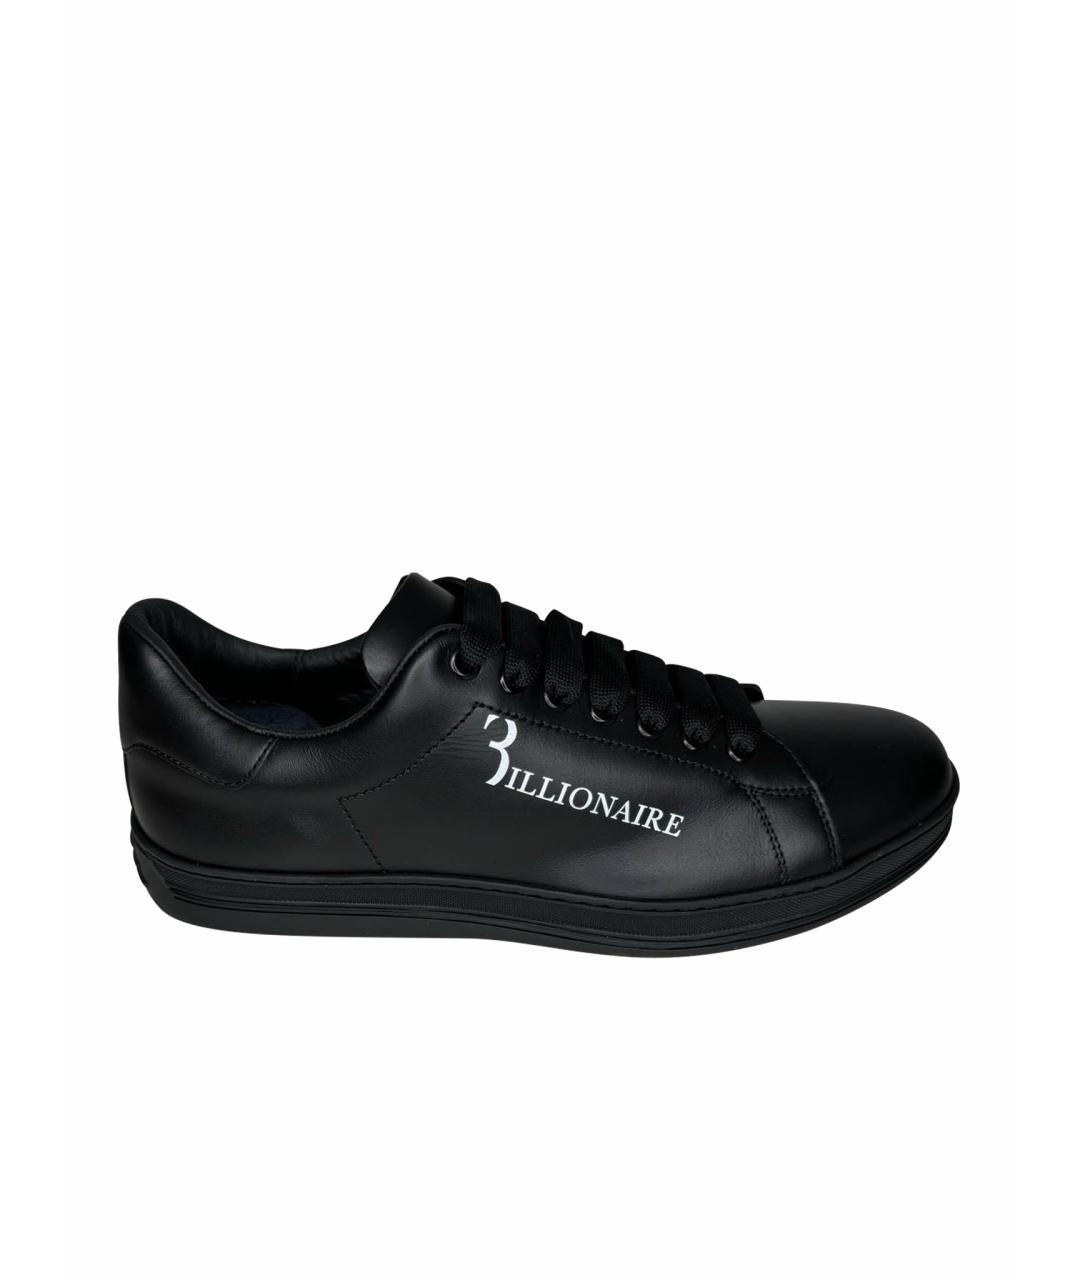 BILLIONAIRE Черные кожаные низкие кроссовки / кеды, фото 1